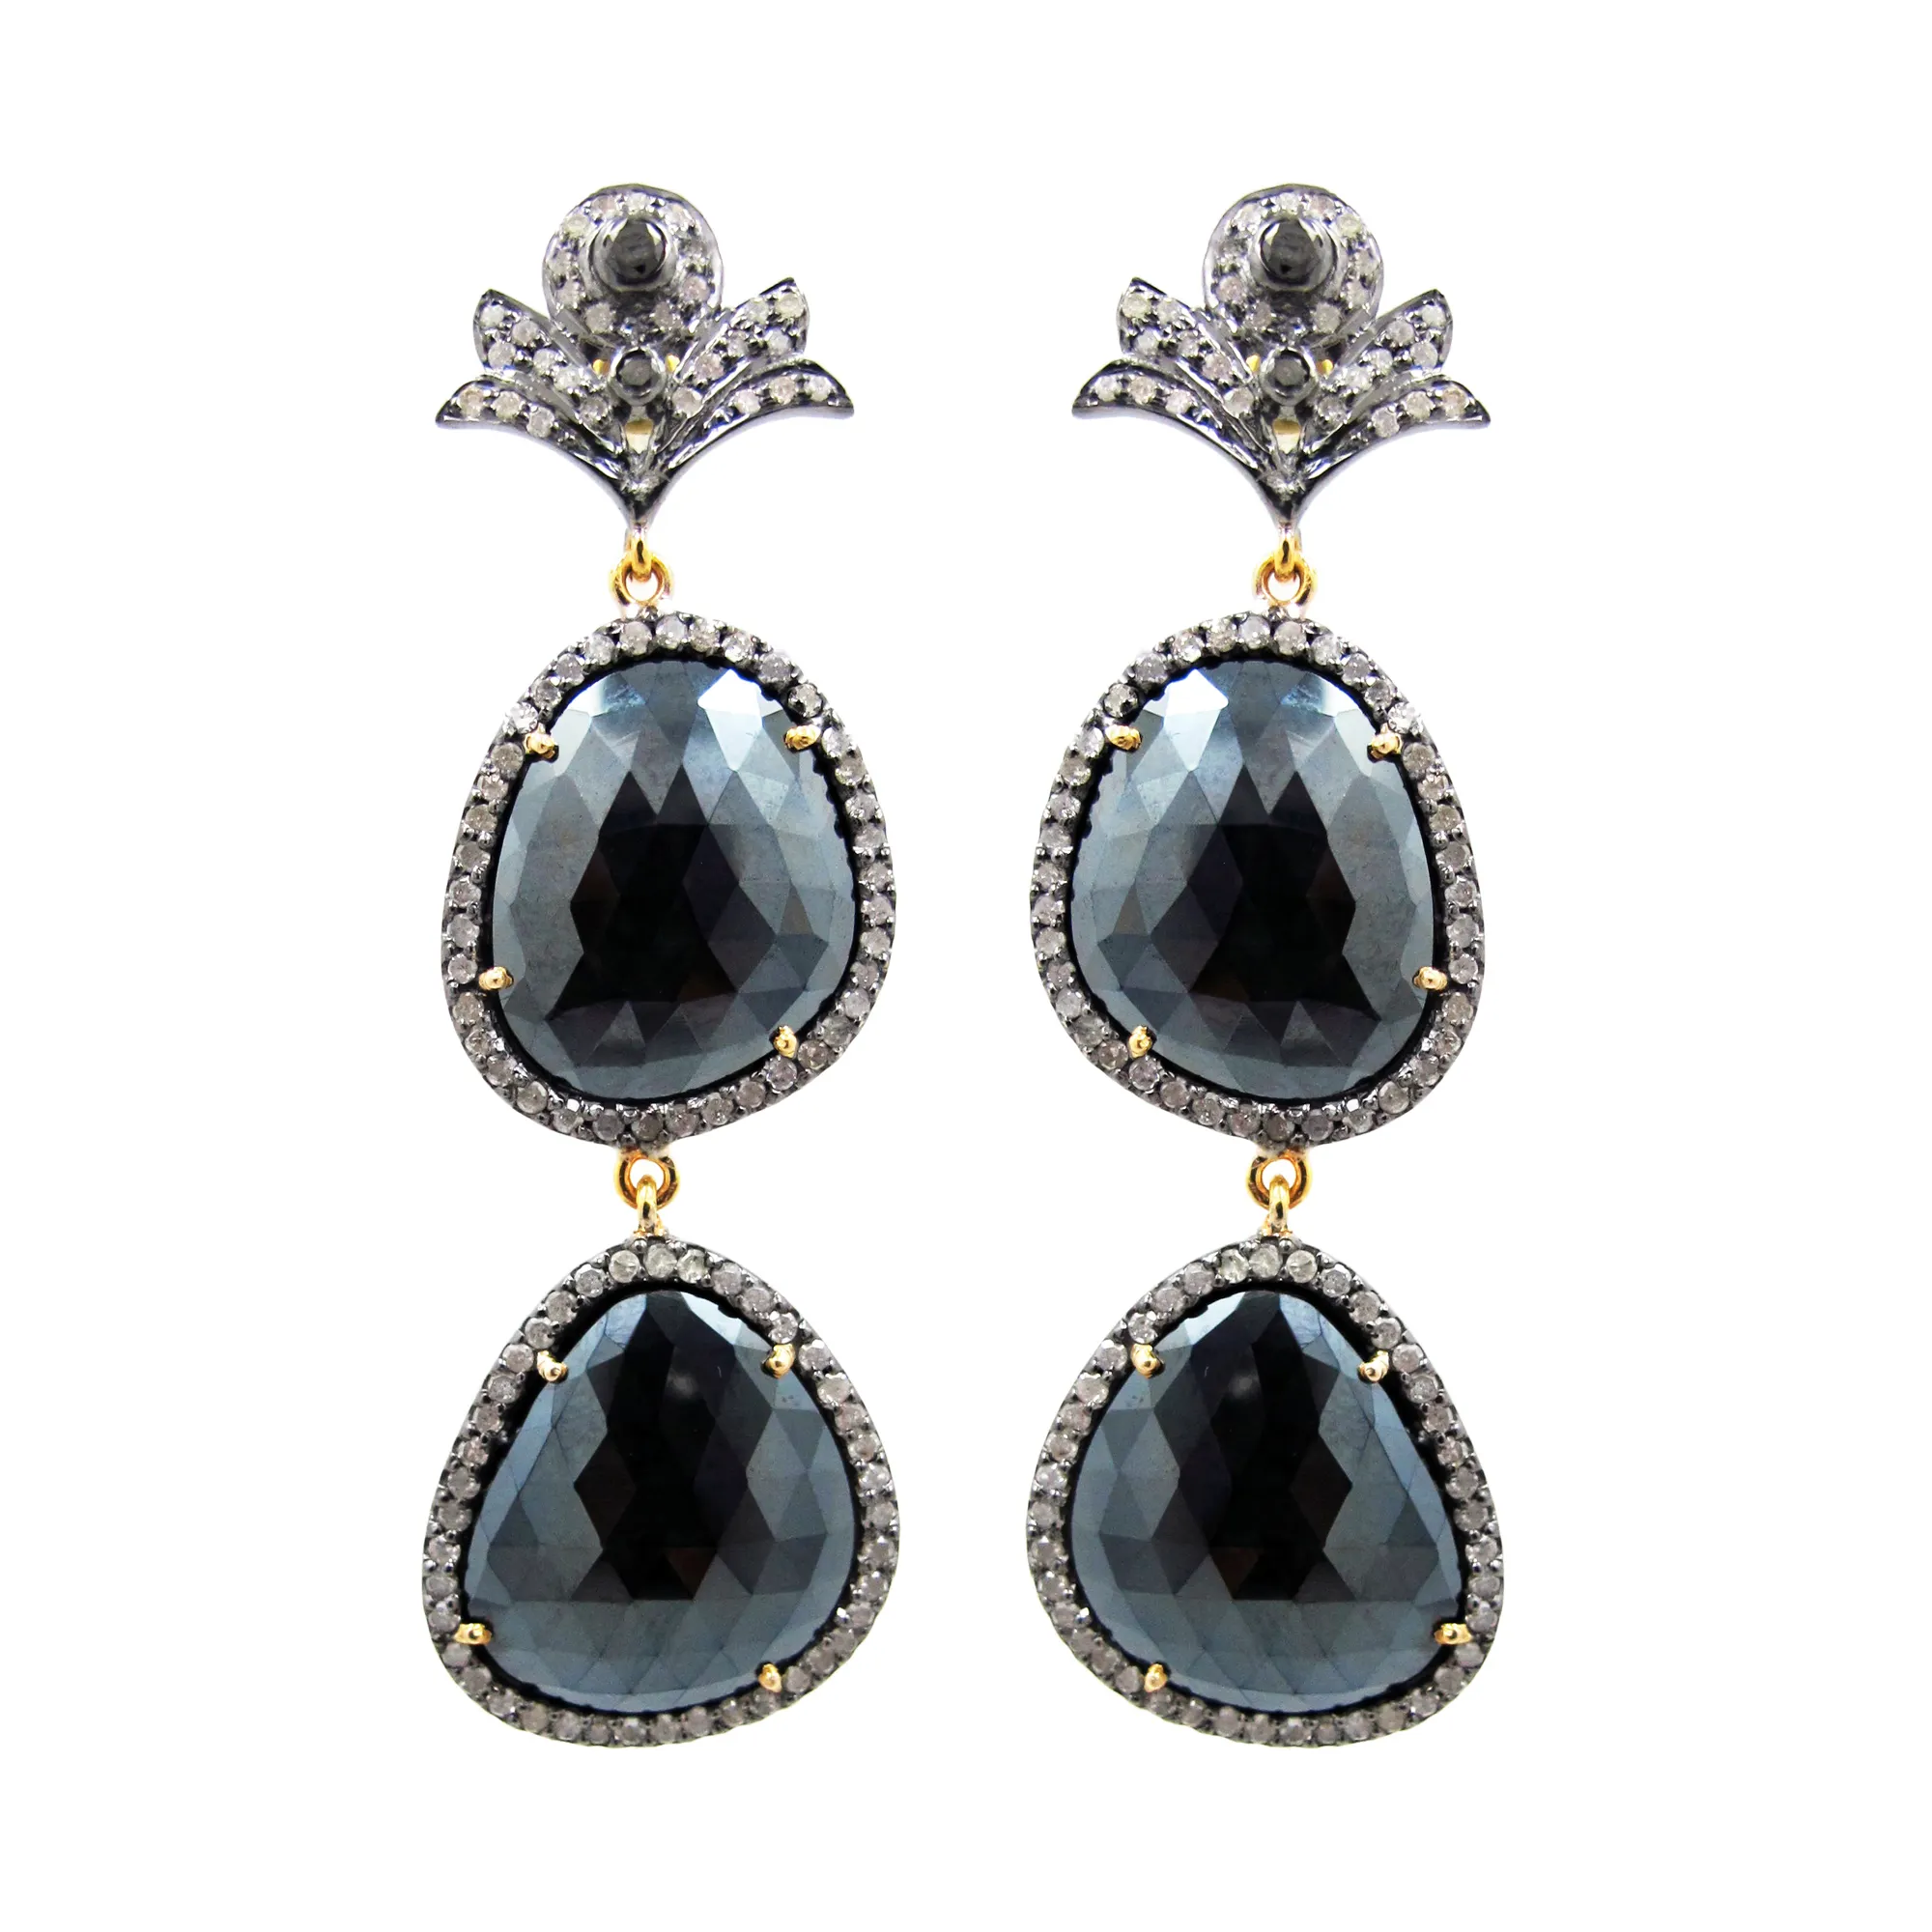 Tersedia Pave Berlian Prong Pengaturan Hitam Spinel 14K Emas Menjuntai Anting 925 Perak Murni Grosir Perhiasan Pemasok